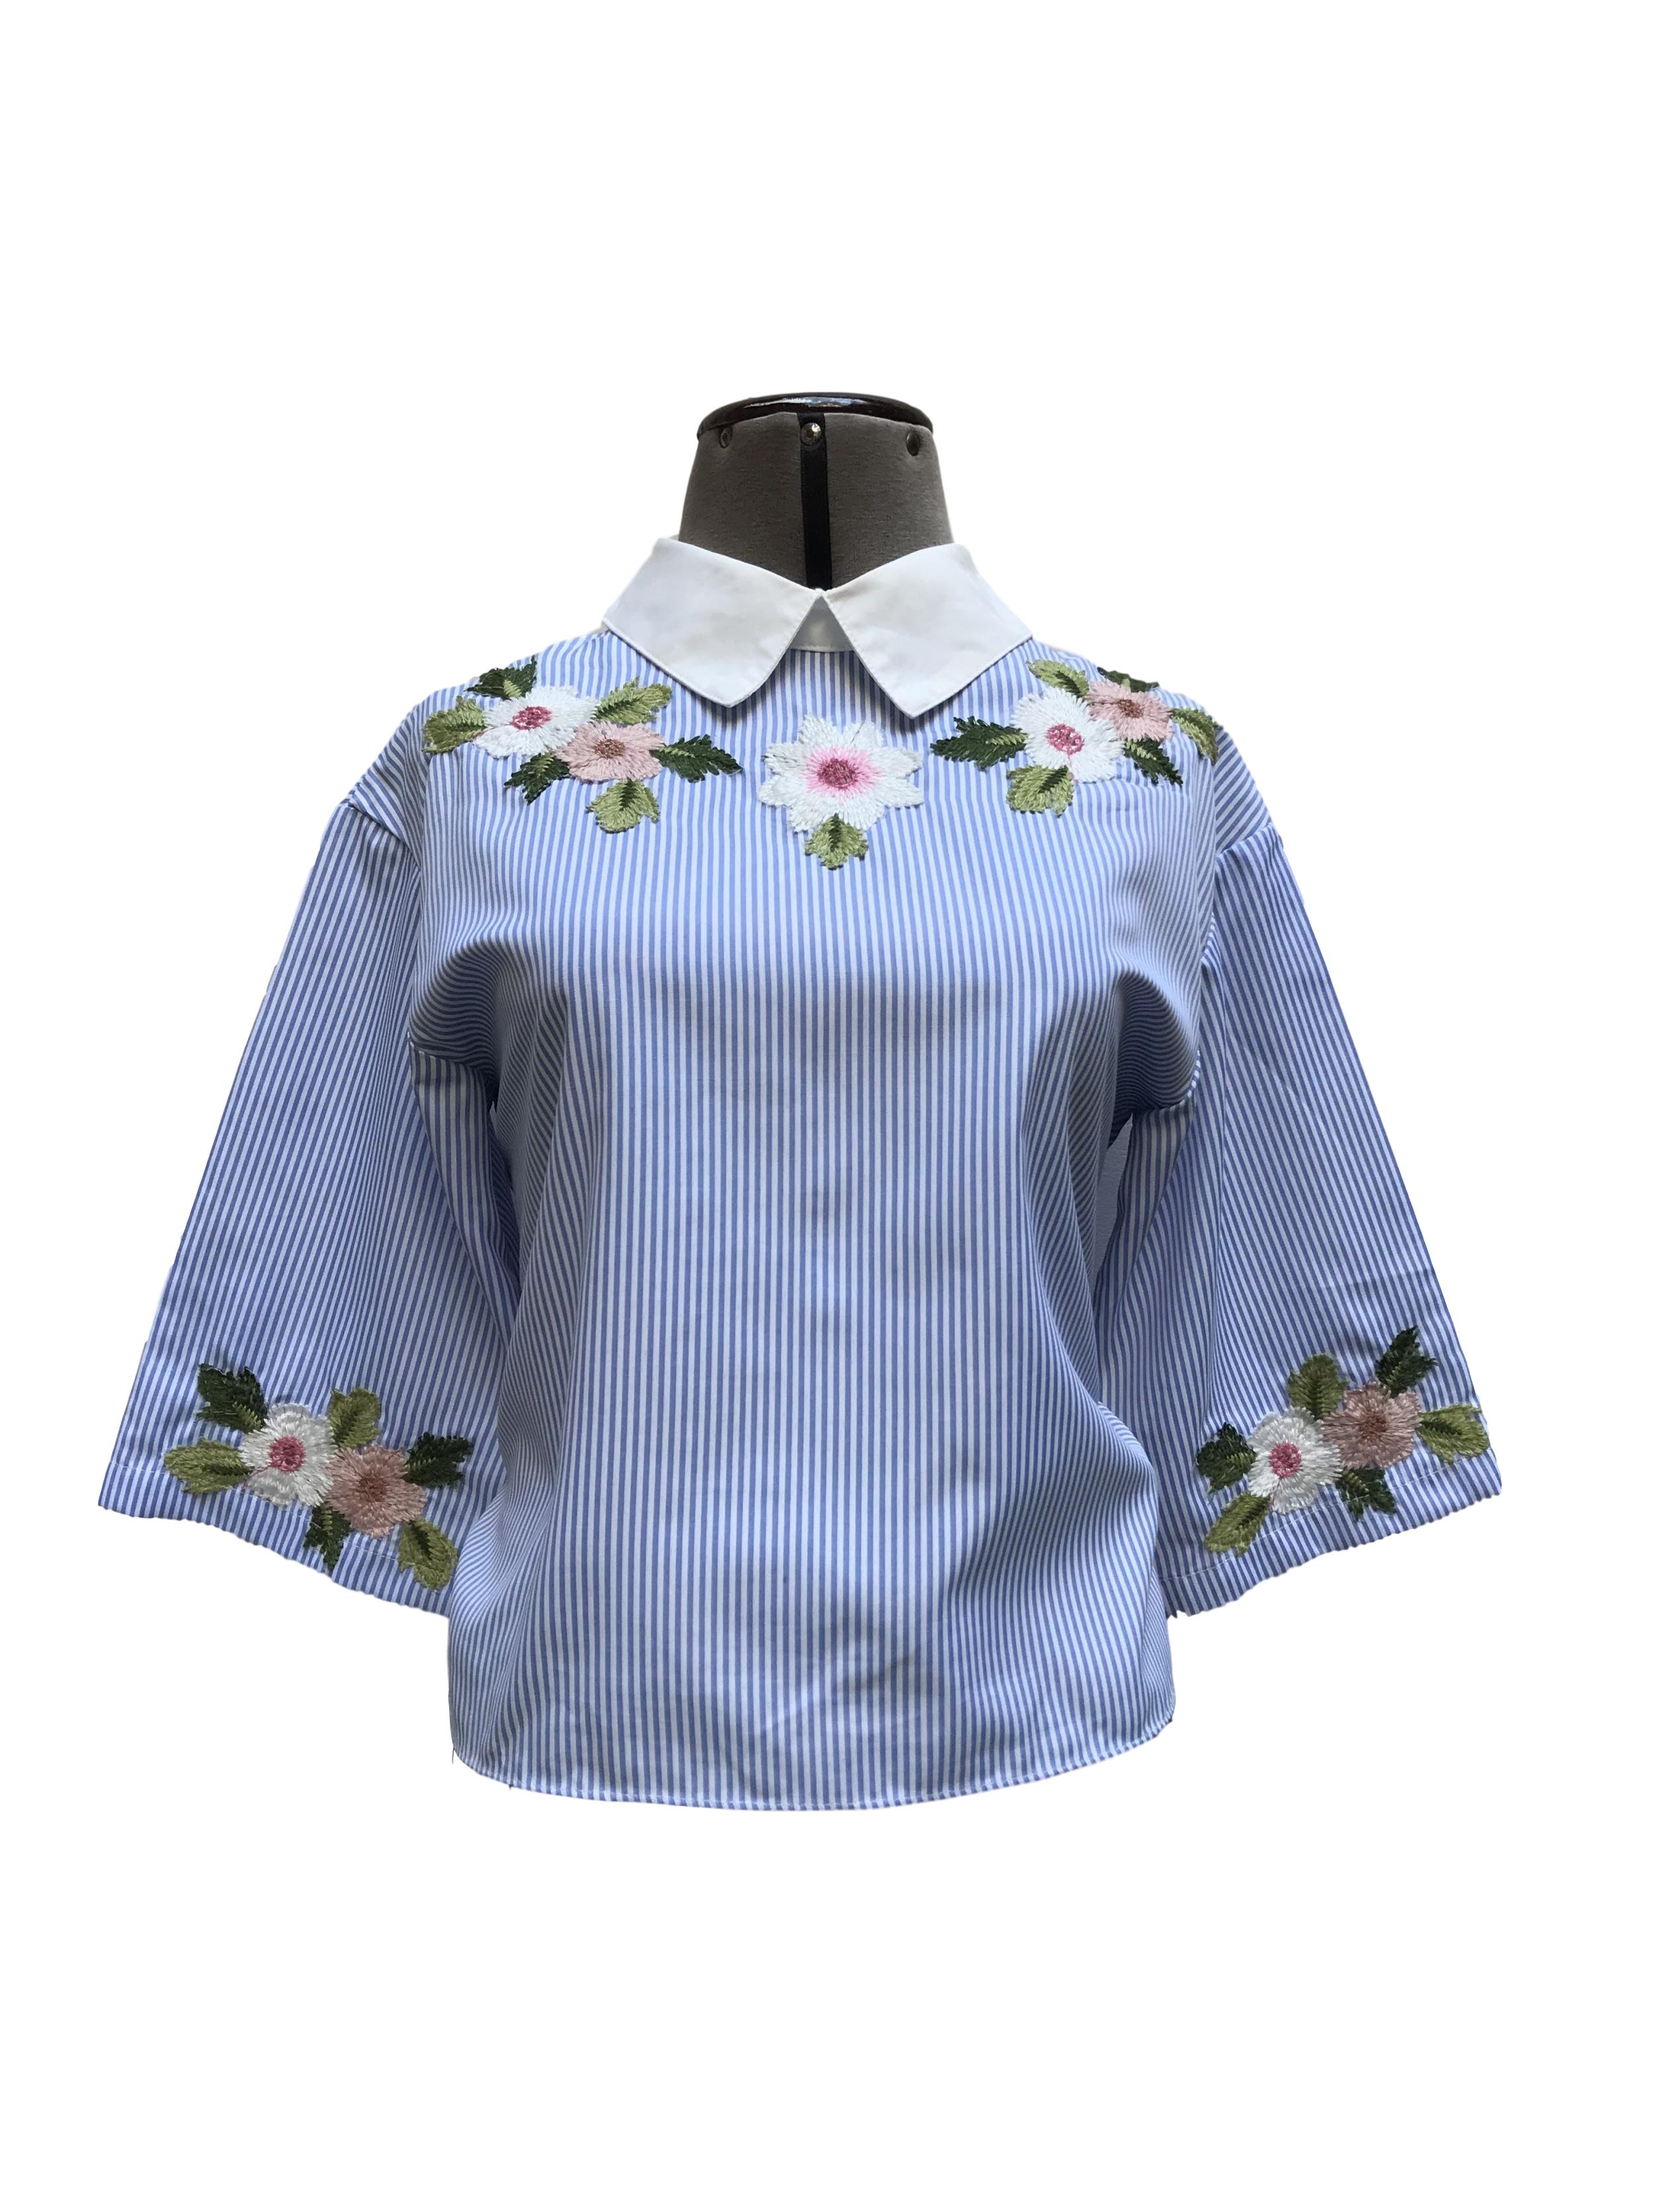 Blusa Shein a rayas blancas y celeste con bordado de flores, botones y lazo posterior
Talla XS/S